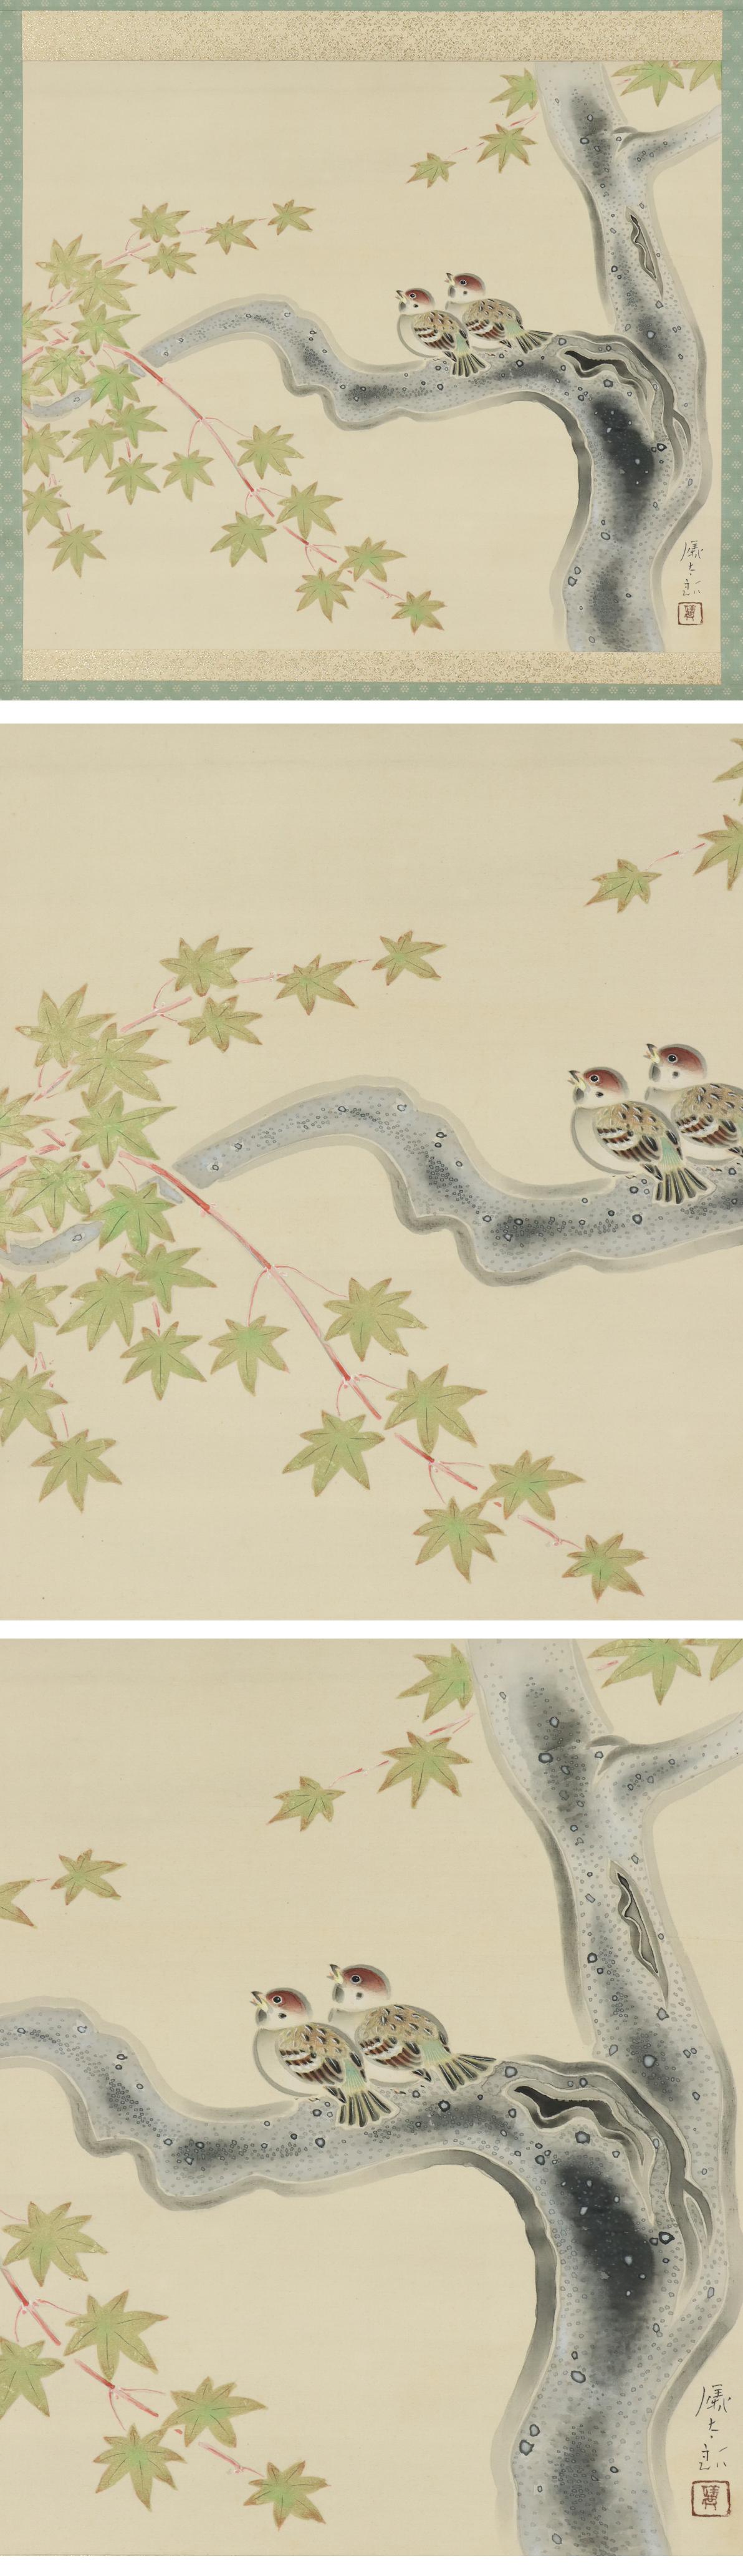 【真作】 丸儀太郎 憩小禽 雀 共箱 師：川端龍子 肉筆 絹本 掛軸 r680 商品细节 | Yahoo! JAPAN Auction | One  Map by FROM JAPAN